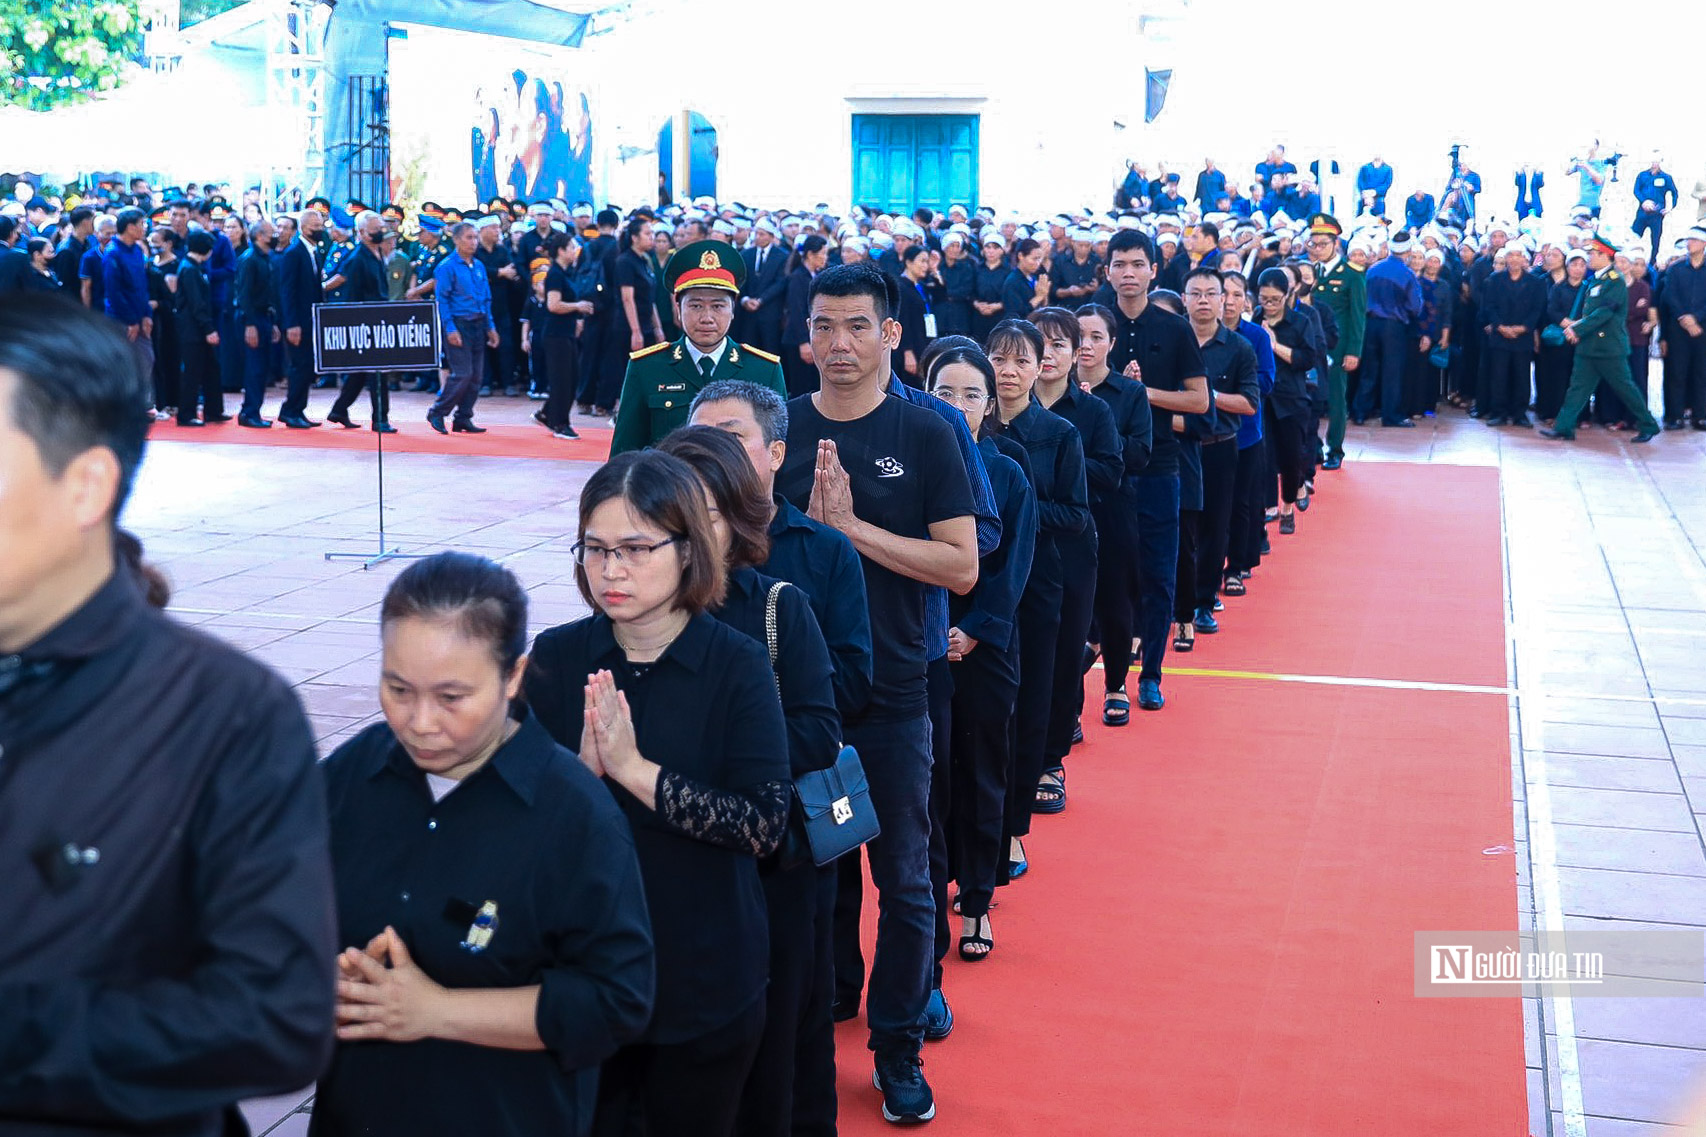 Hàng ngàn người tới viếng Tổng Bí thư Nguyễn Phú Trọng tại quê nhà- Ảnh 6.